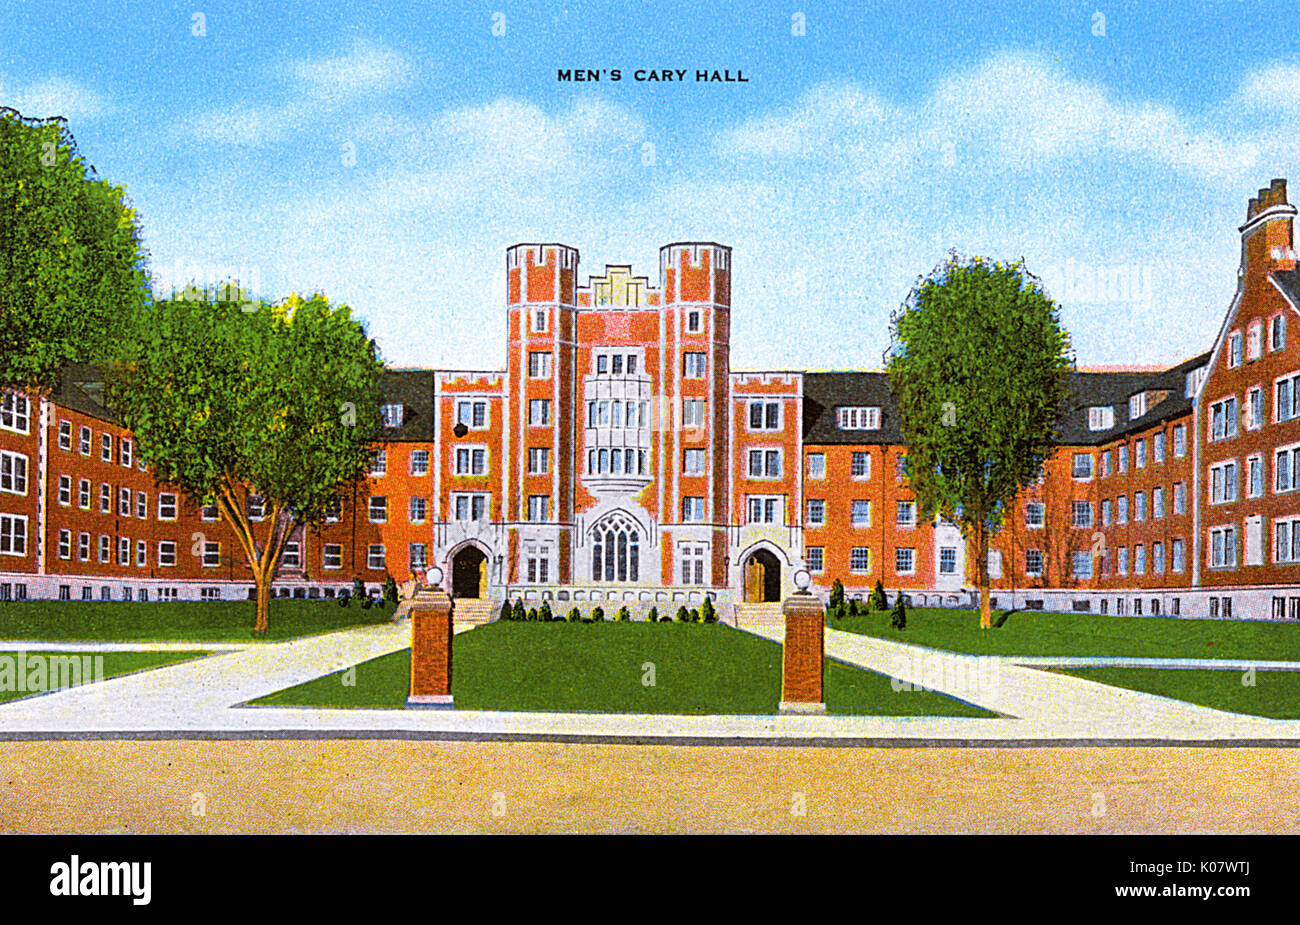 Purdue University, Lafayette, Indiana, États-Unis - Cary Hall pour hommes Banque D'Images